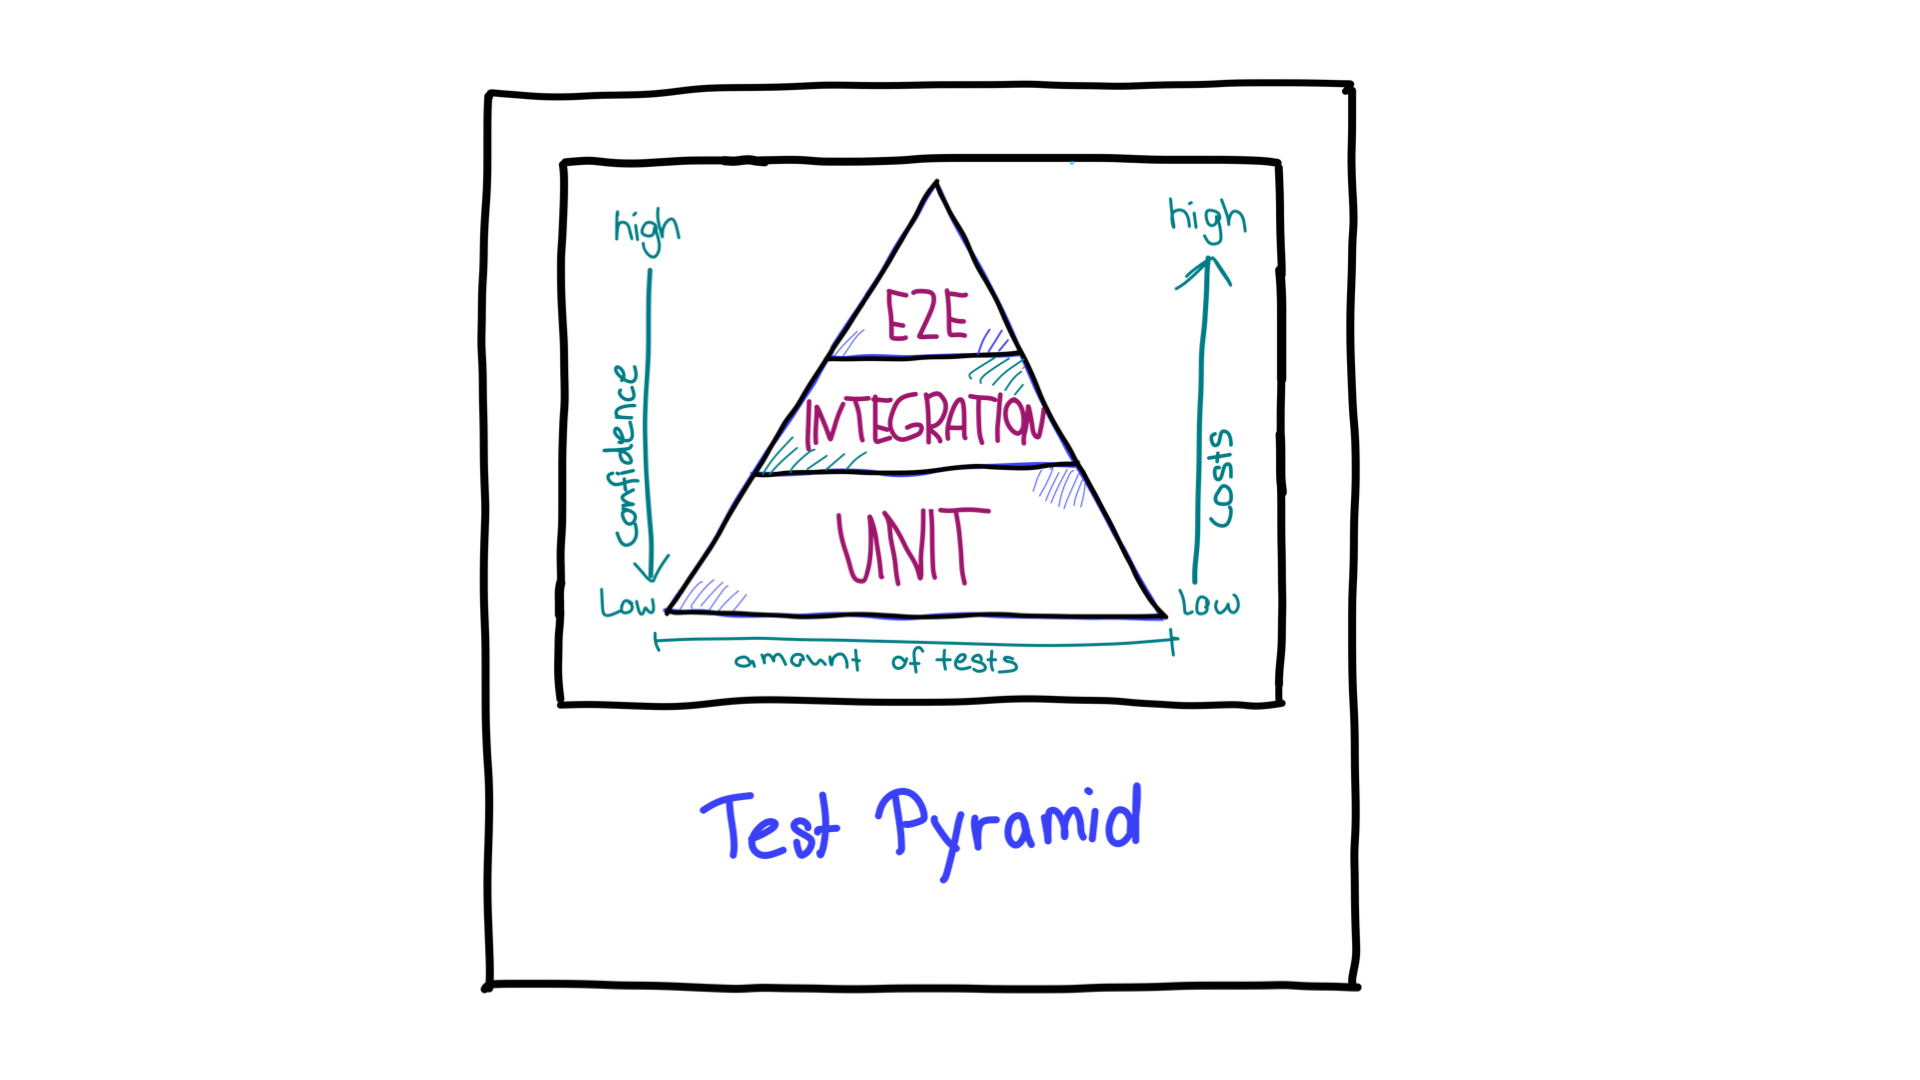 さまざまなテストタイプに必要なリソースと信頼度の方向を示す矢印が付いた、テストピラミッド。